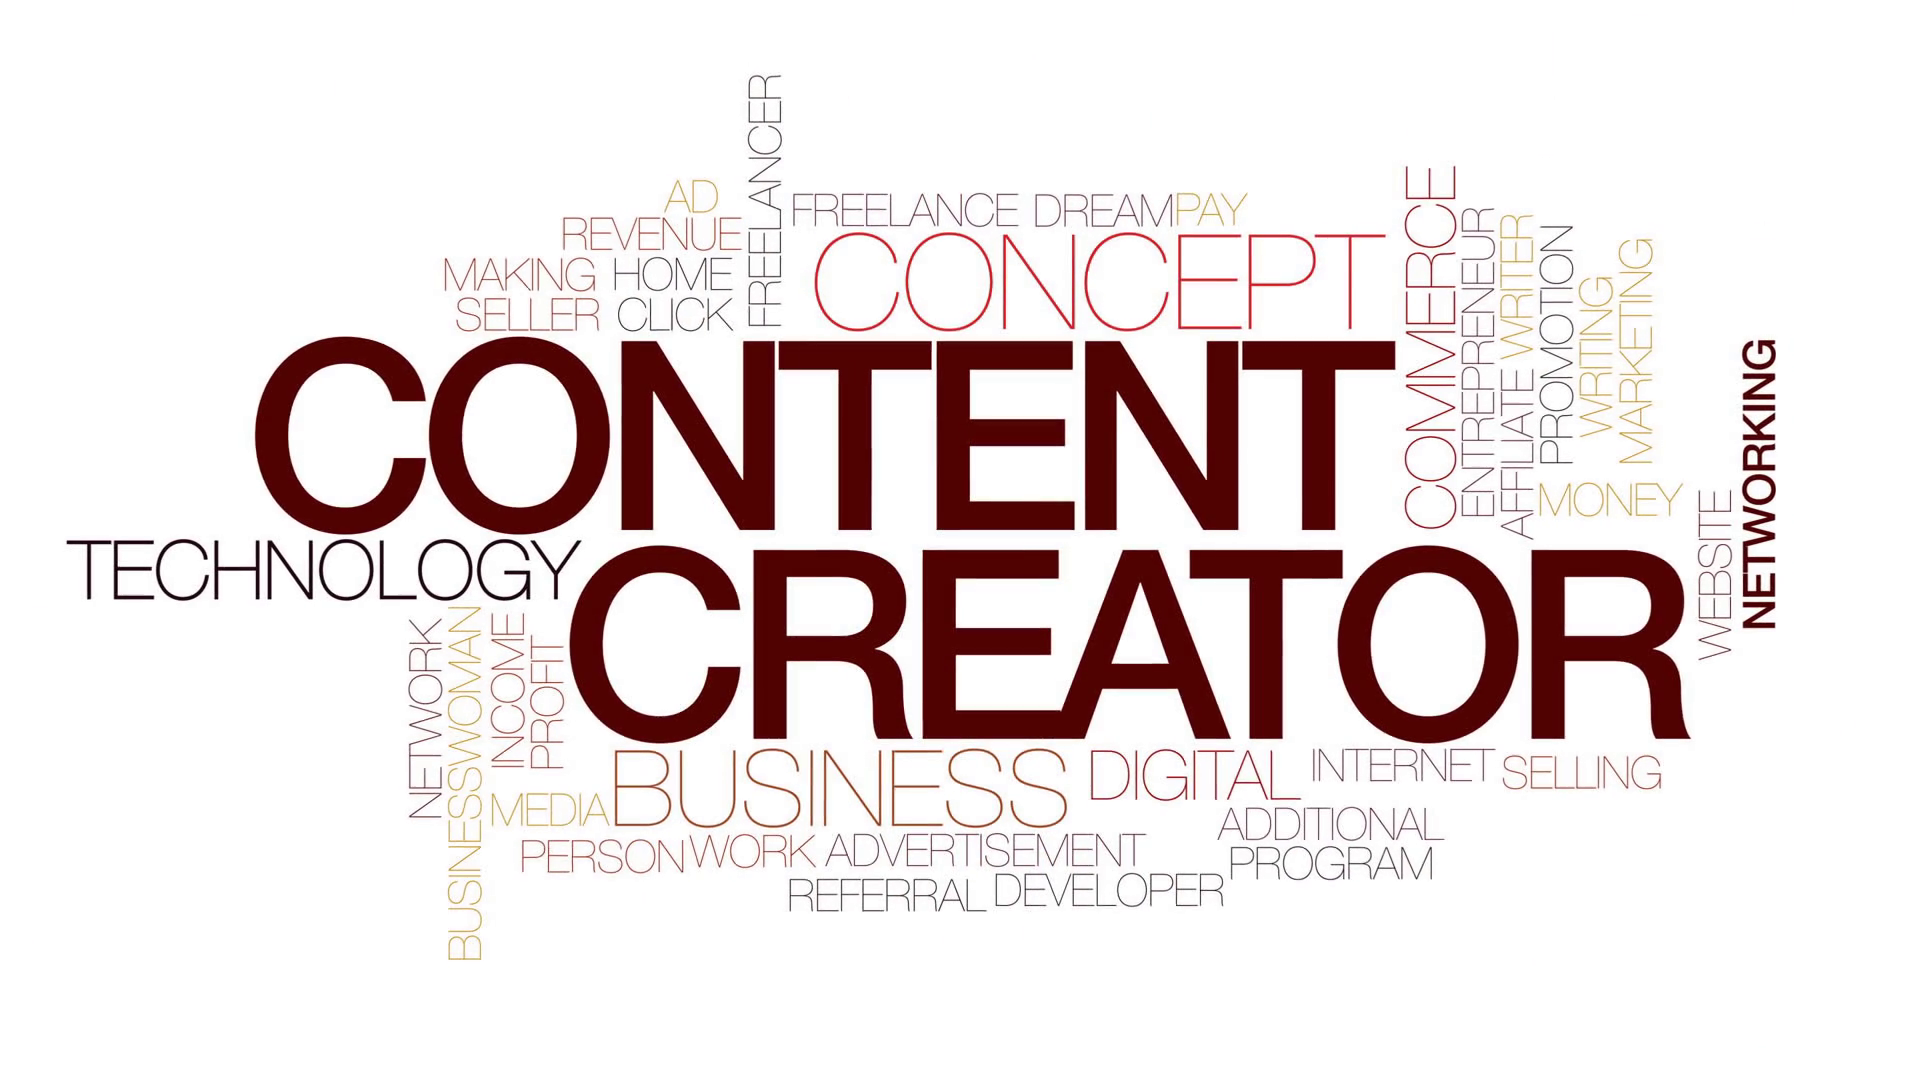 Content Creator là gì? Kỹ năng cần có cho người làm content?